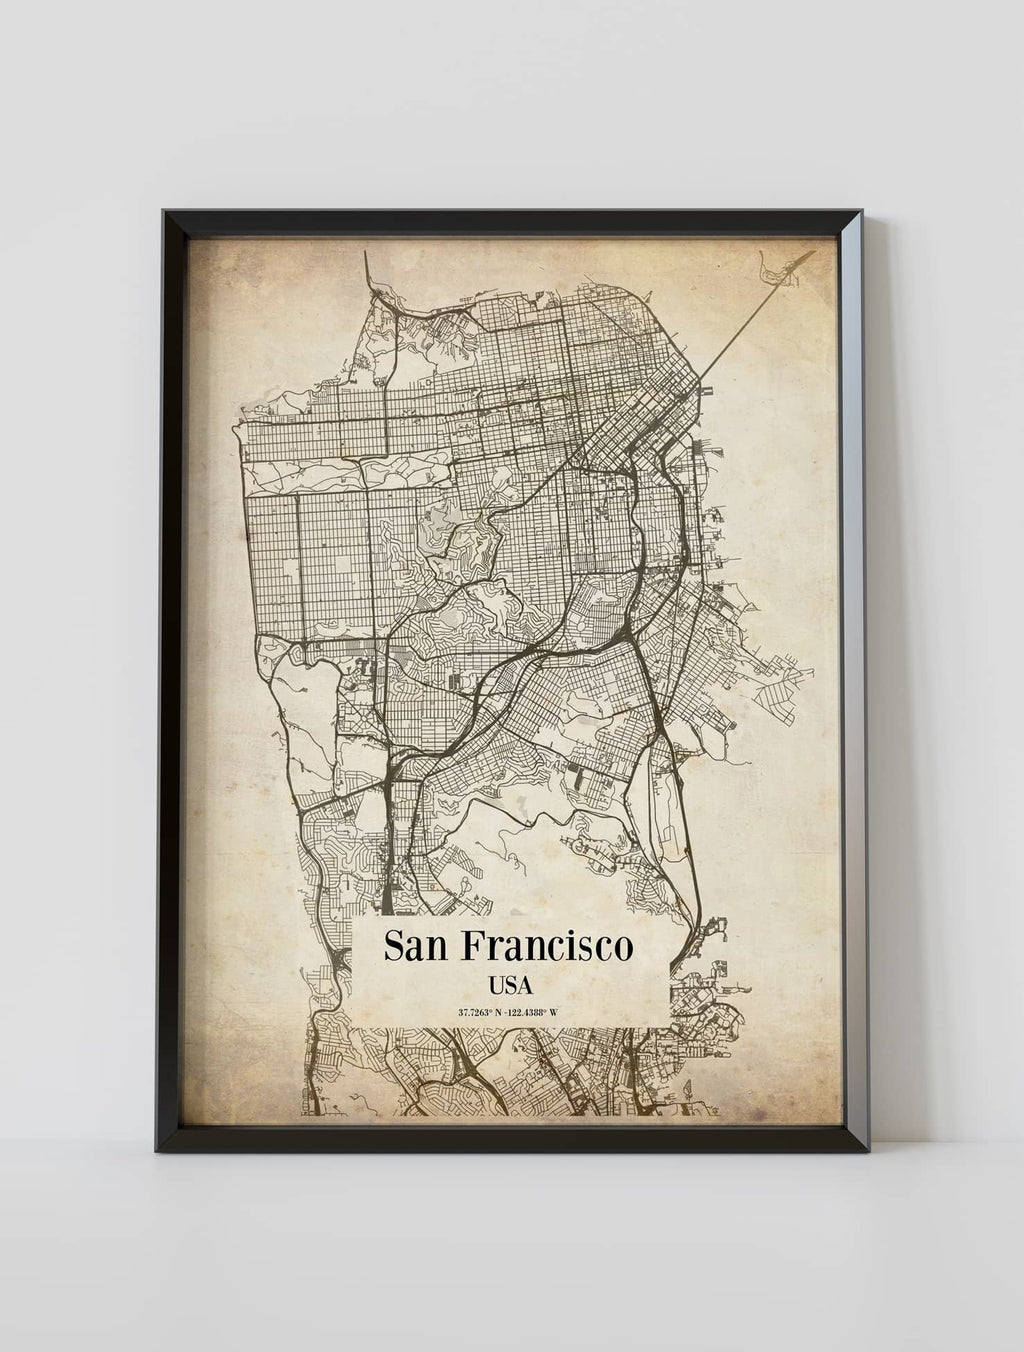 Vintage city map framed poster of San Francisco